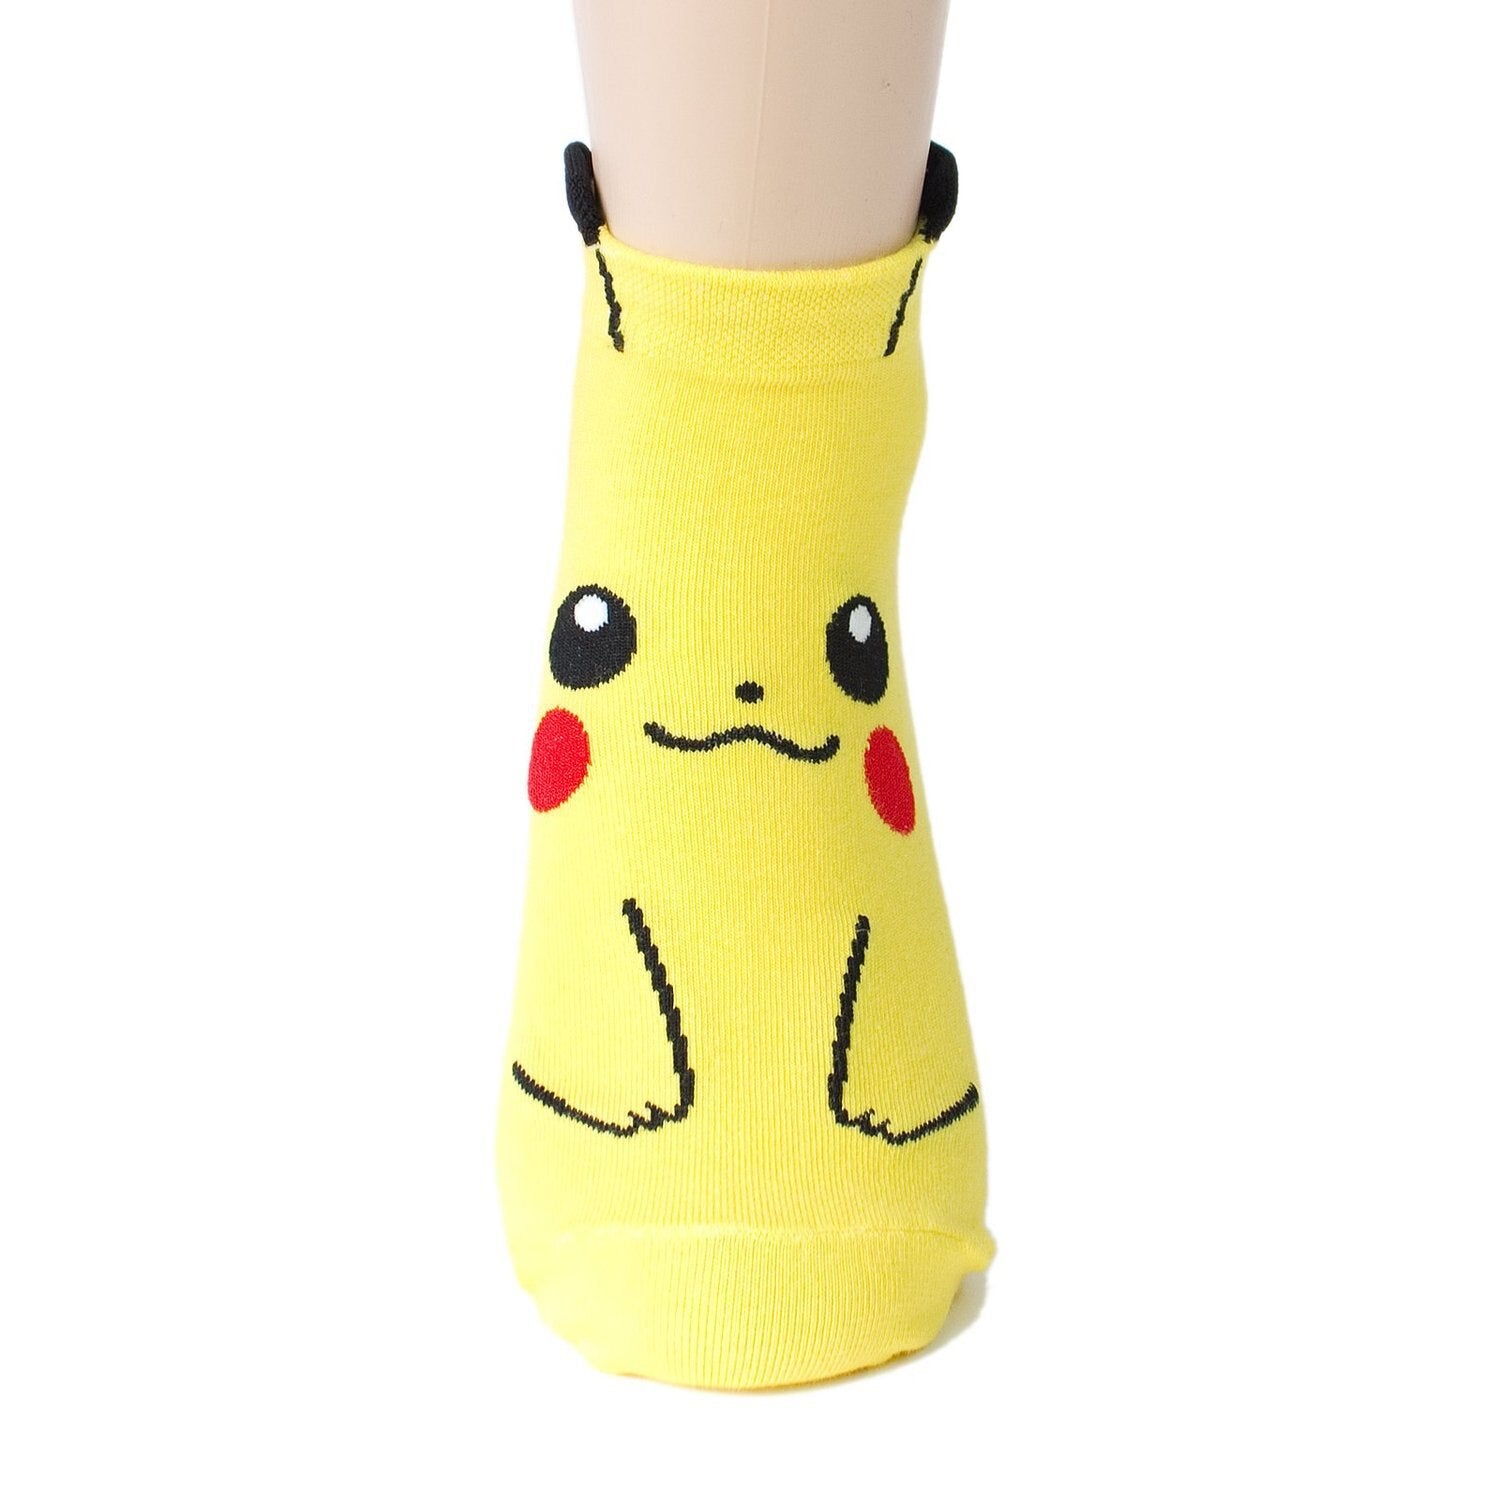 Pokémon chaussettes en coton Pikachu